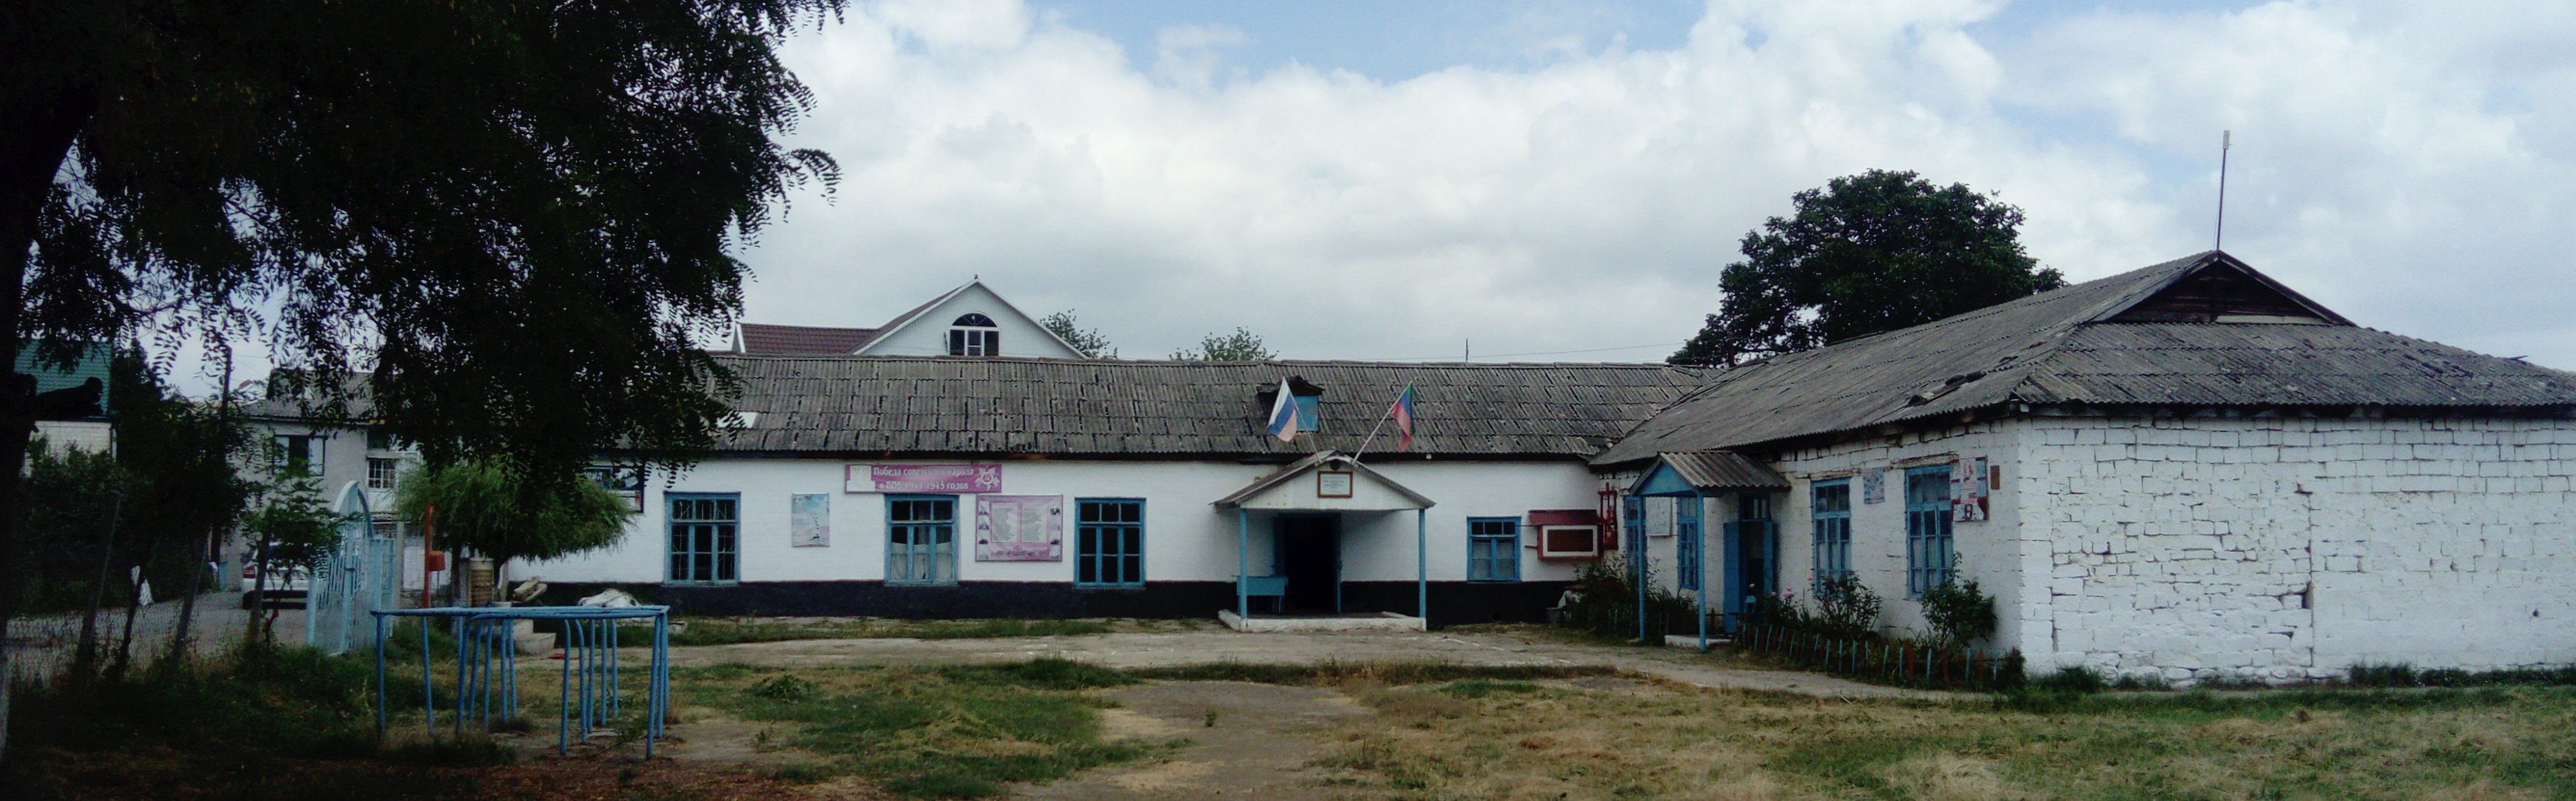 Муниципальное казенное общеобразовательное учреждение "Саидкентская средняя общеобразовательная школа"